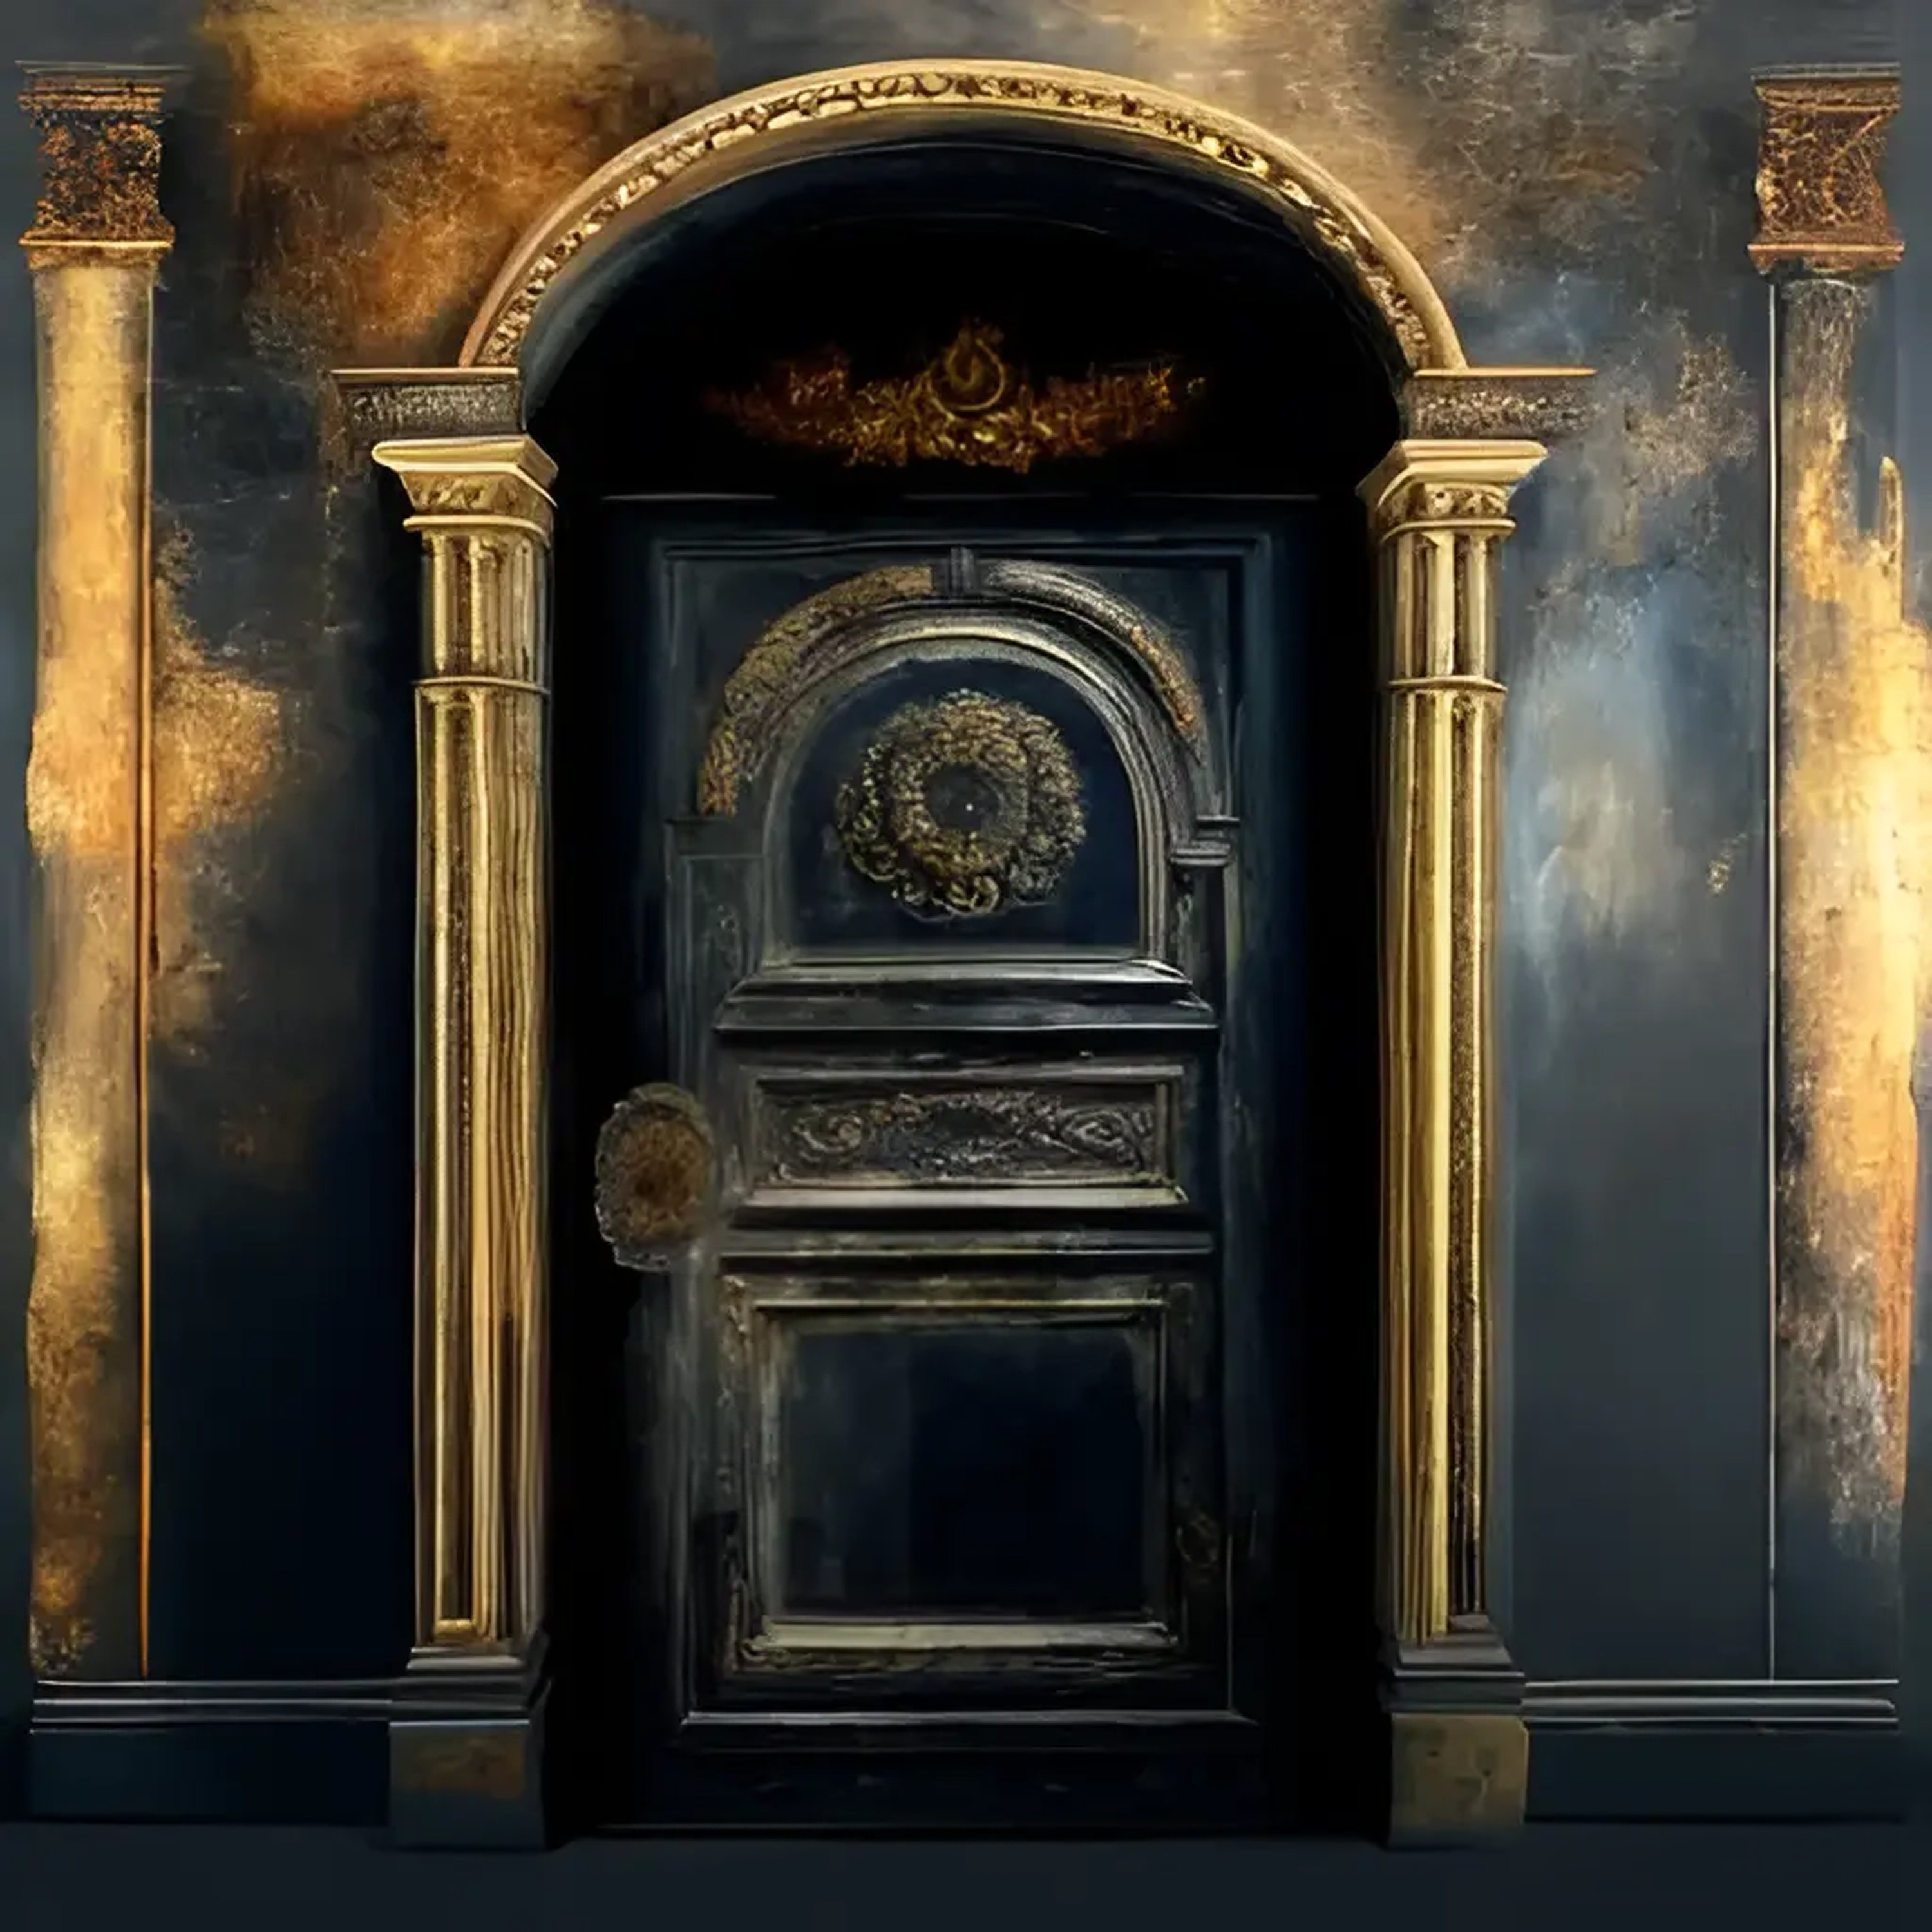 XVII - The door of XNLKX